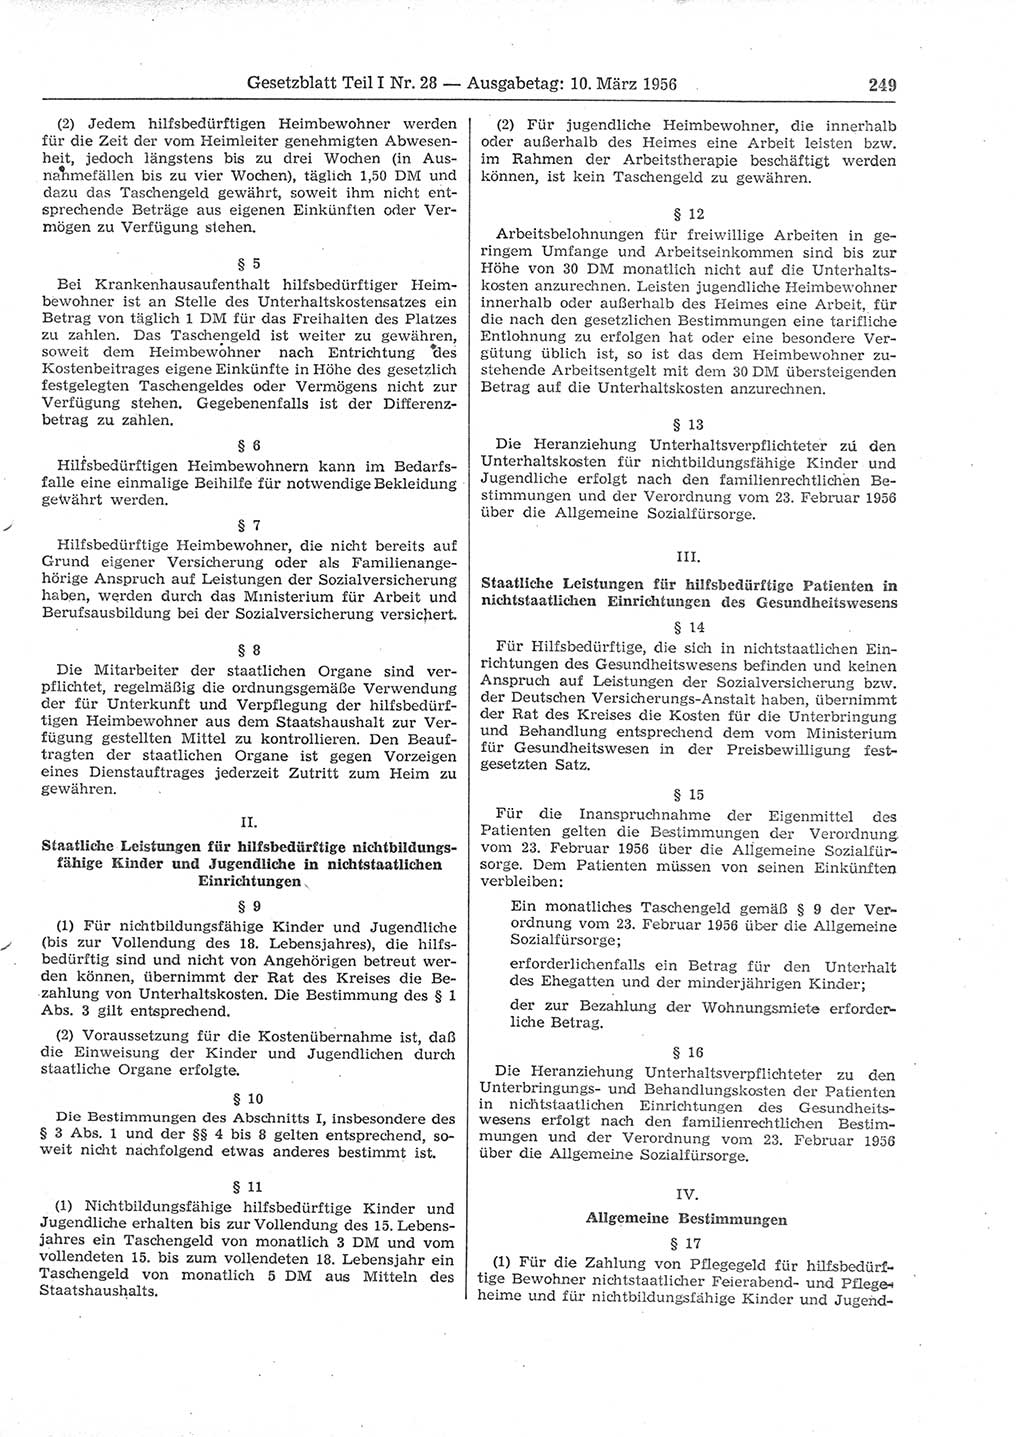 Gesetzblatt (GBl.) der Deutschen Demokratischen Republik (DDR) Teil Ⅰ 1956, Seite 249 (GBl. DDR Ⅰ 1956, S. 249)